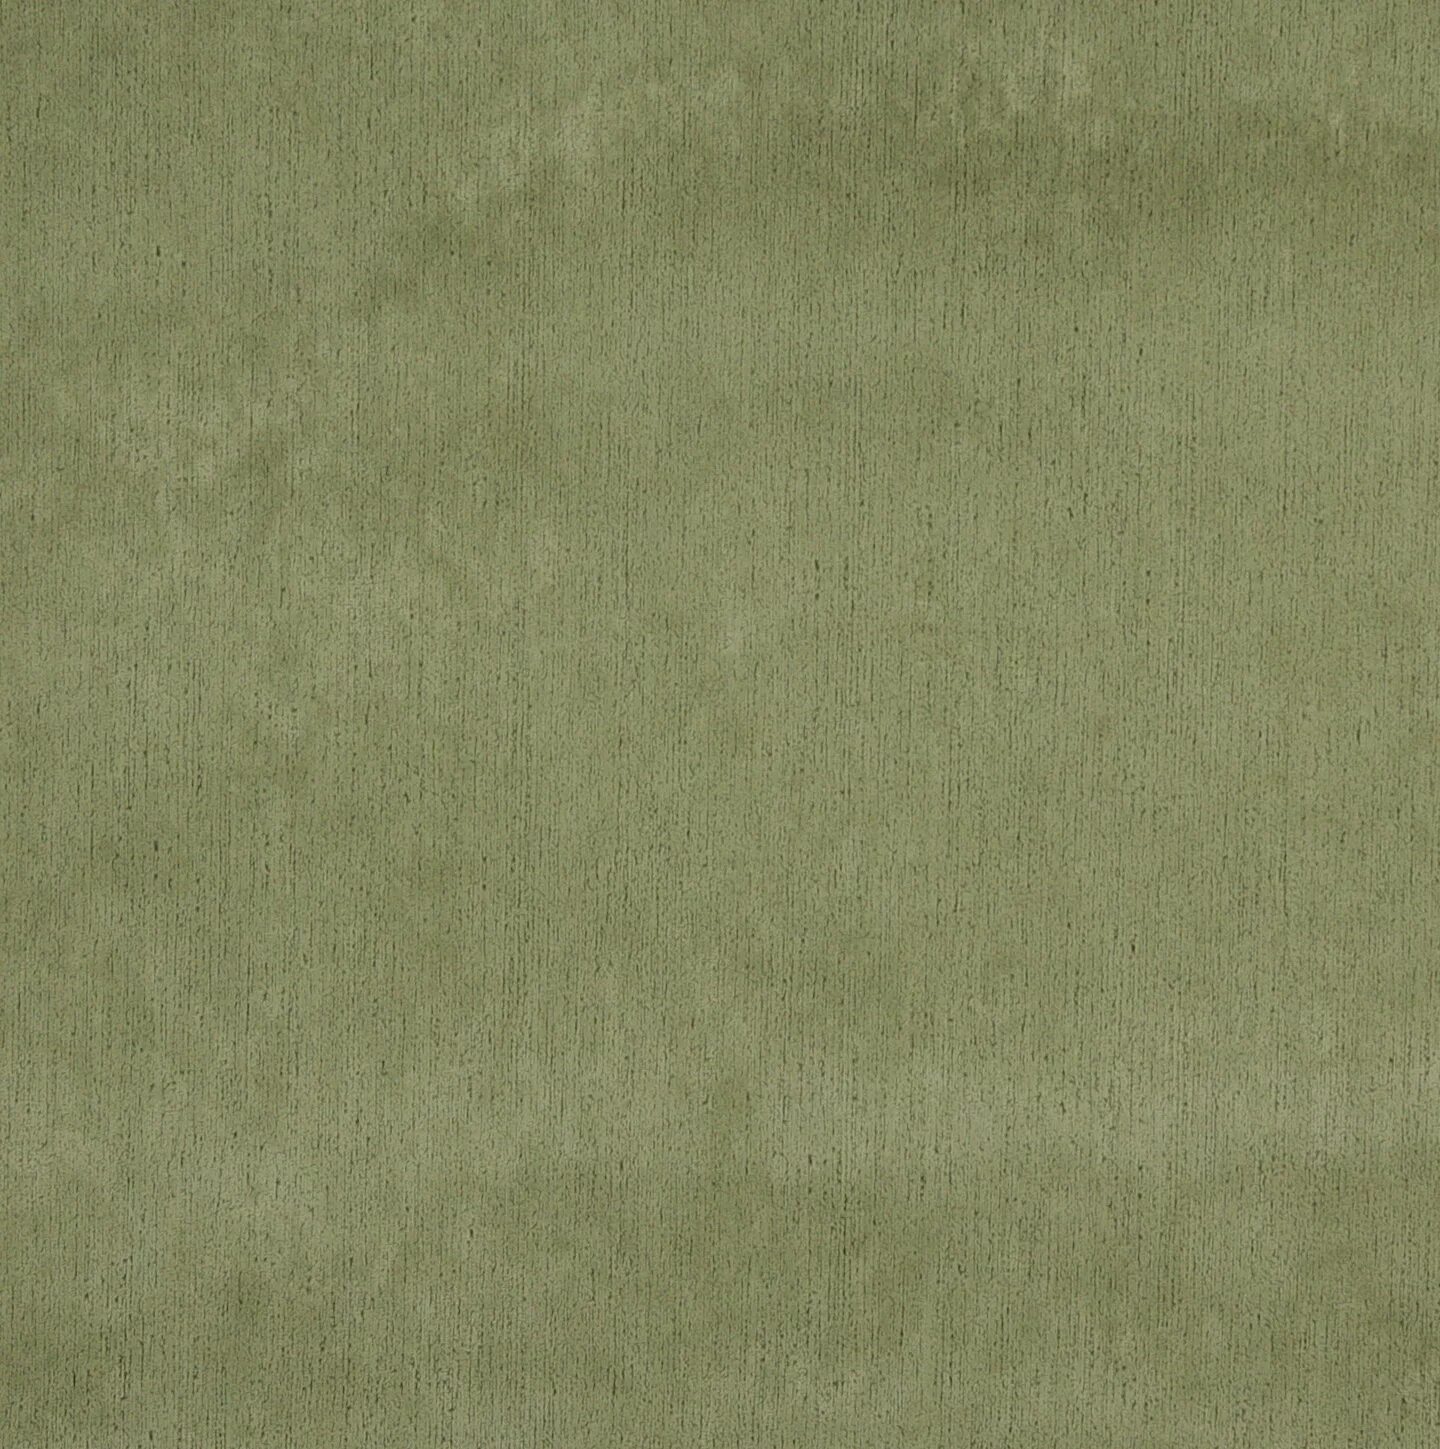 Светло болотный. Вельвет болотный. Оливковая ткань. Ткань болотного цвета. Оливковый цвет ткани.